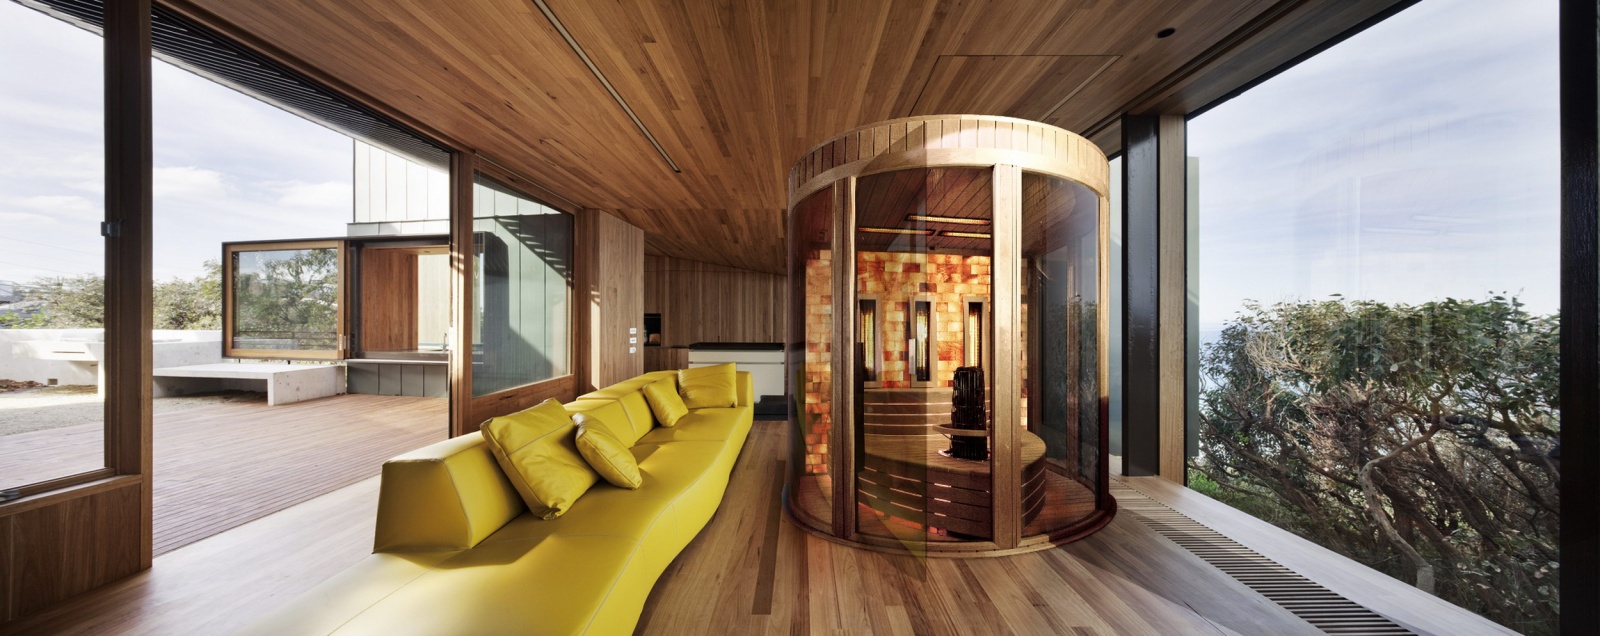 Realizace luxusní interiérové sauny